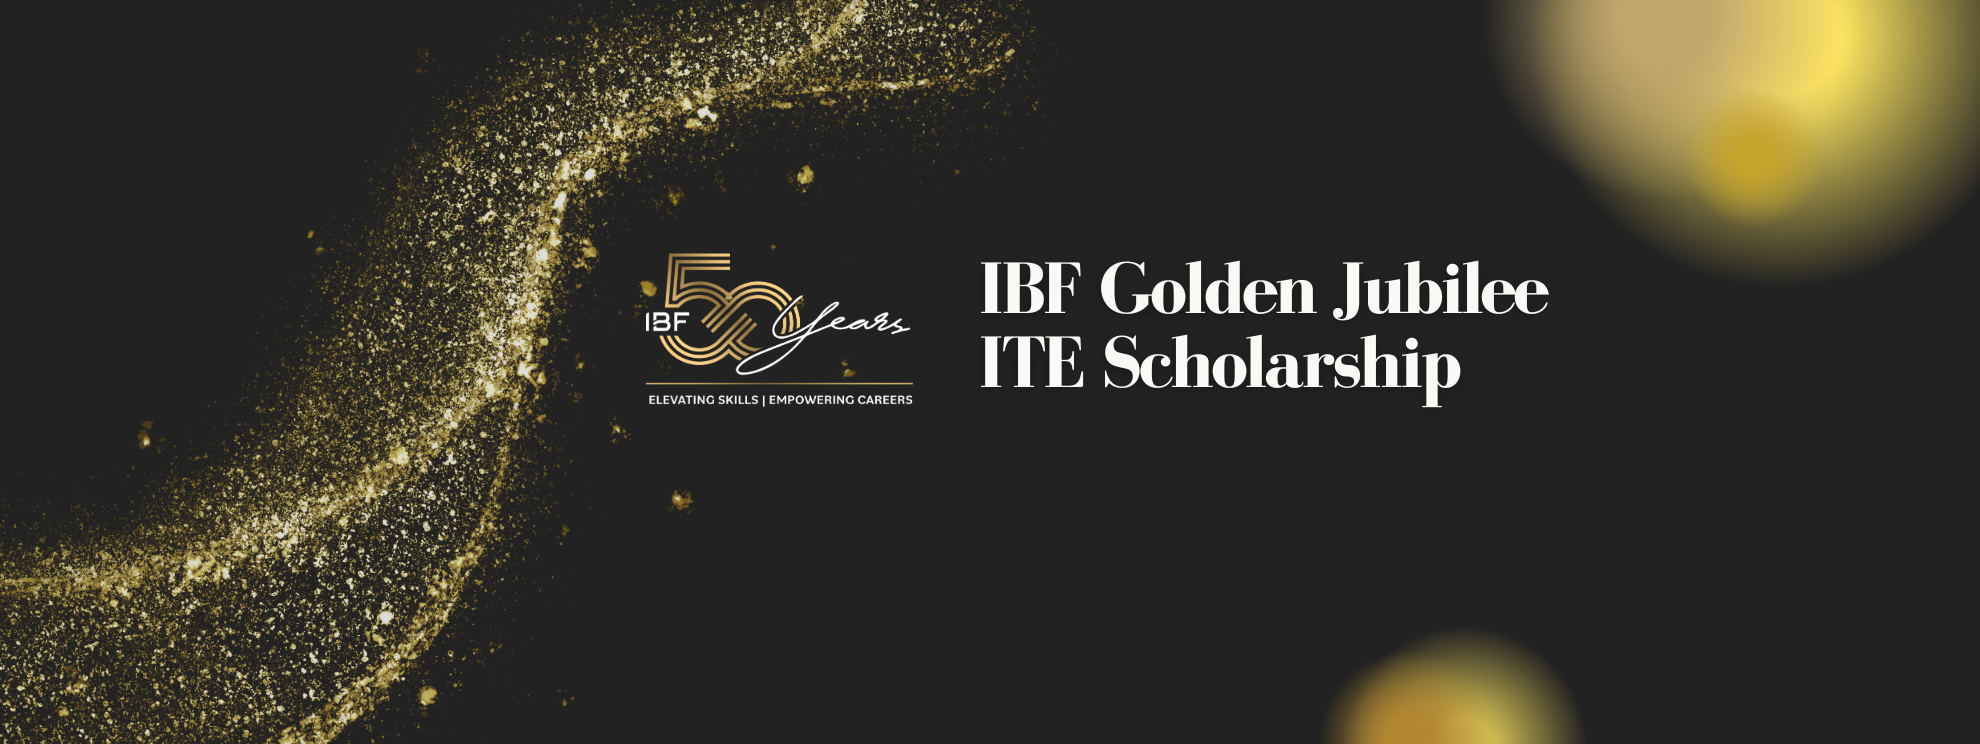 IBF Golden Jubilee ITE Scholarship